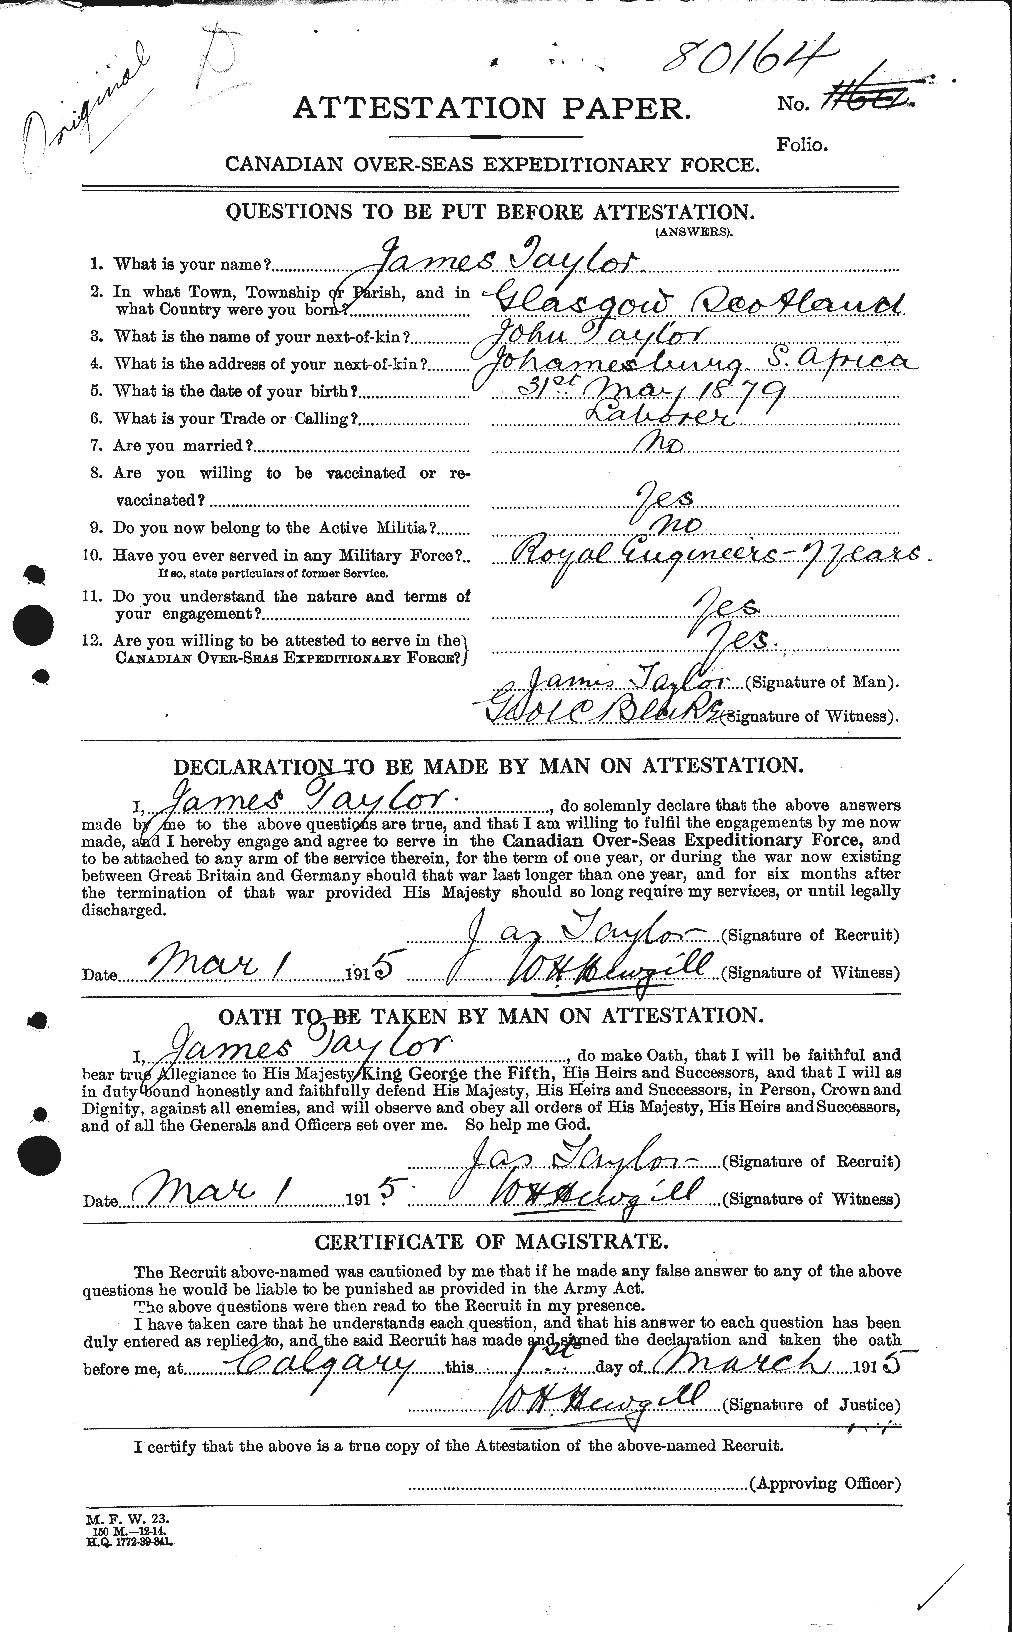 Dossiers du Personnel de la Première Guerre mondiale - CEC 626682a